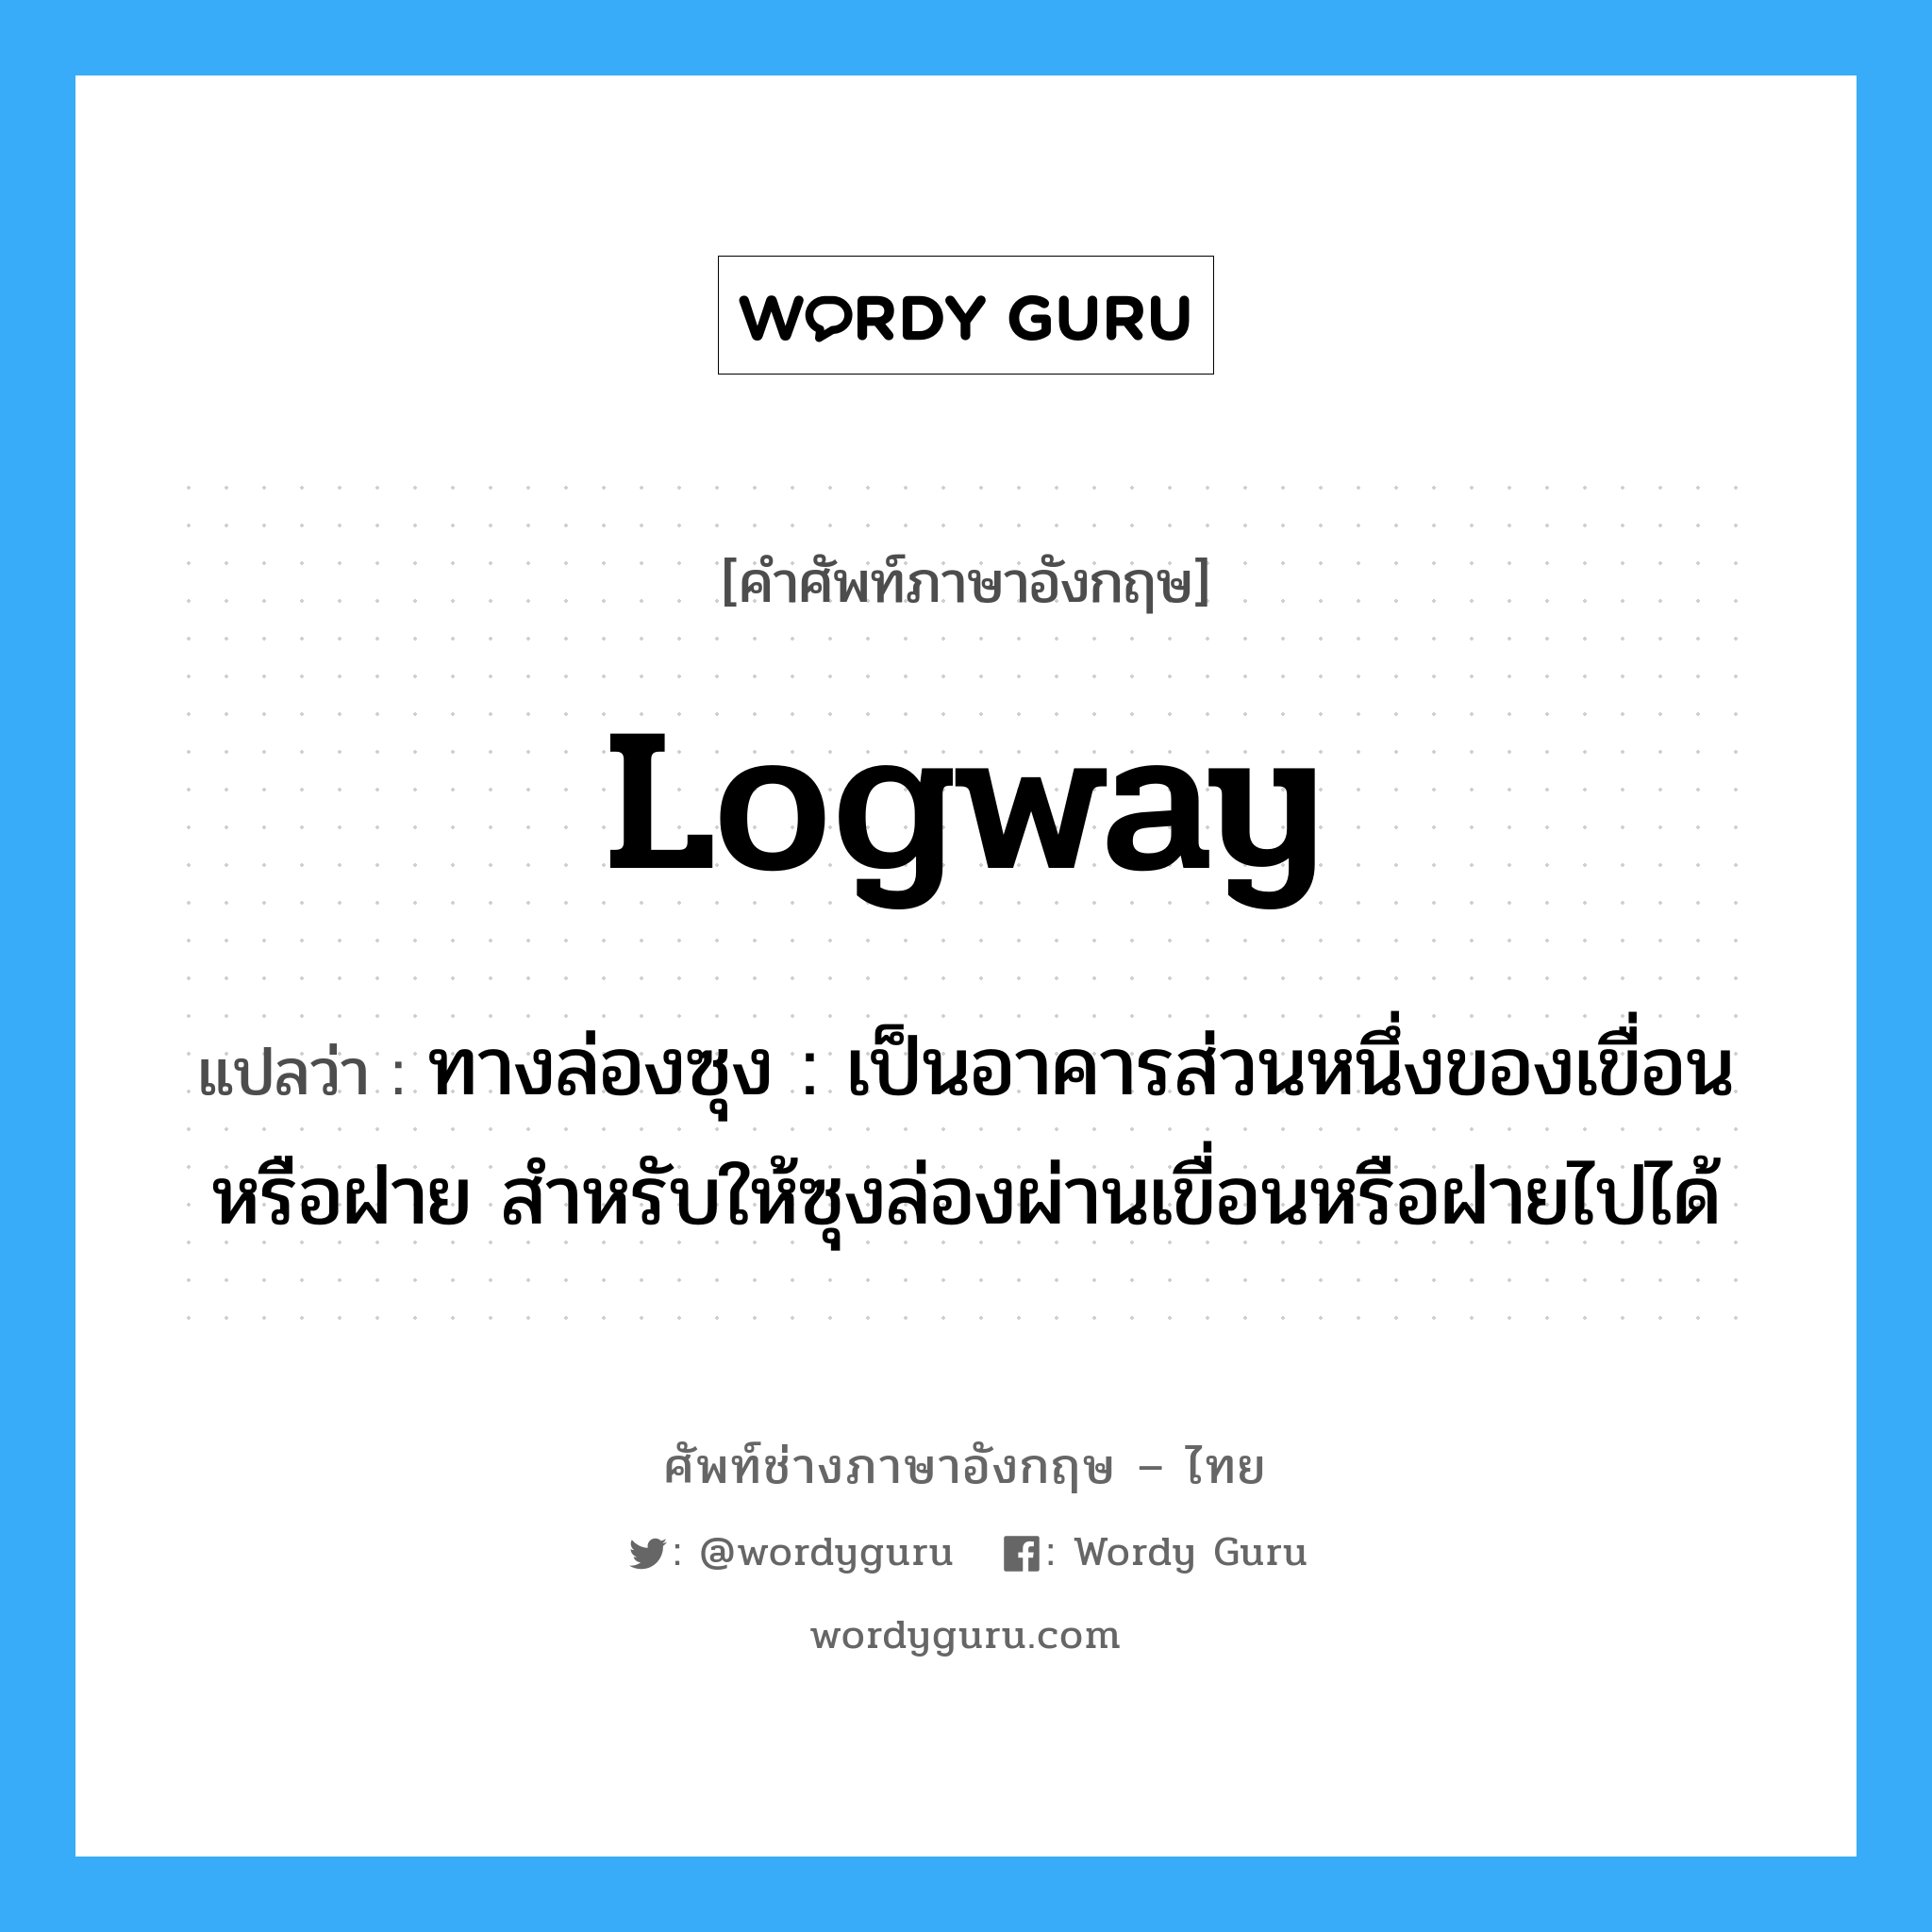 logway แปลว่า?, คำศัพท์ช่างภาษาอังกฤษ - ไทย logway คำศัพท์ภาษาอังกฤษ logway แปลว่า ทางล่องซุง : เป็นอาคารส่วนหนึ่งของเขื่อนหรือฝาย สำหรับให้ซุงล่องผ่านเขื่อนหรือฝายไปได้